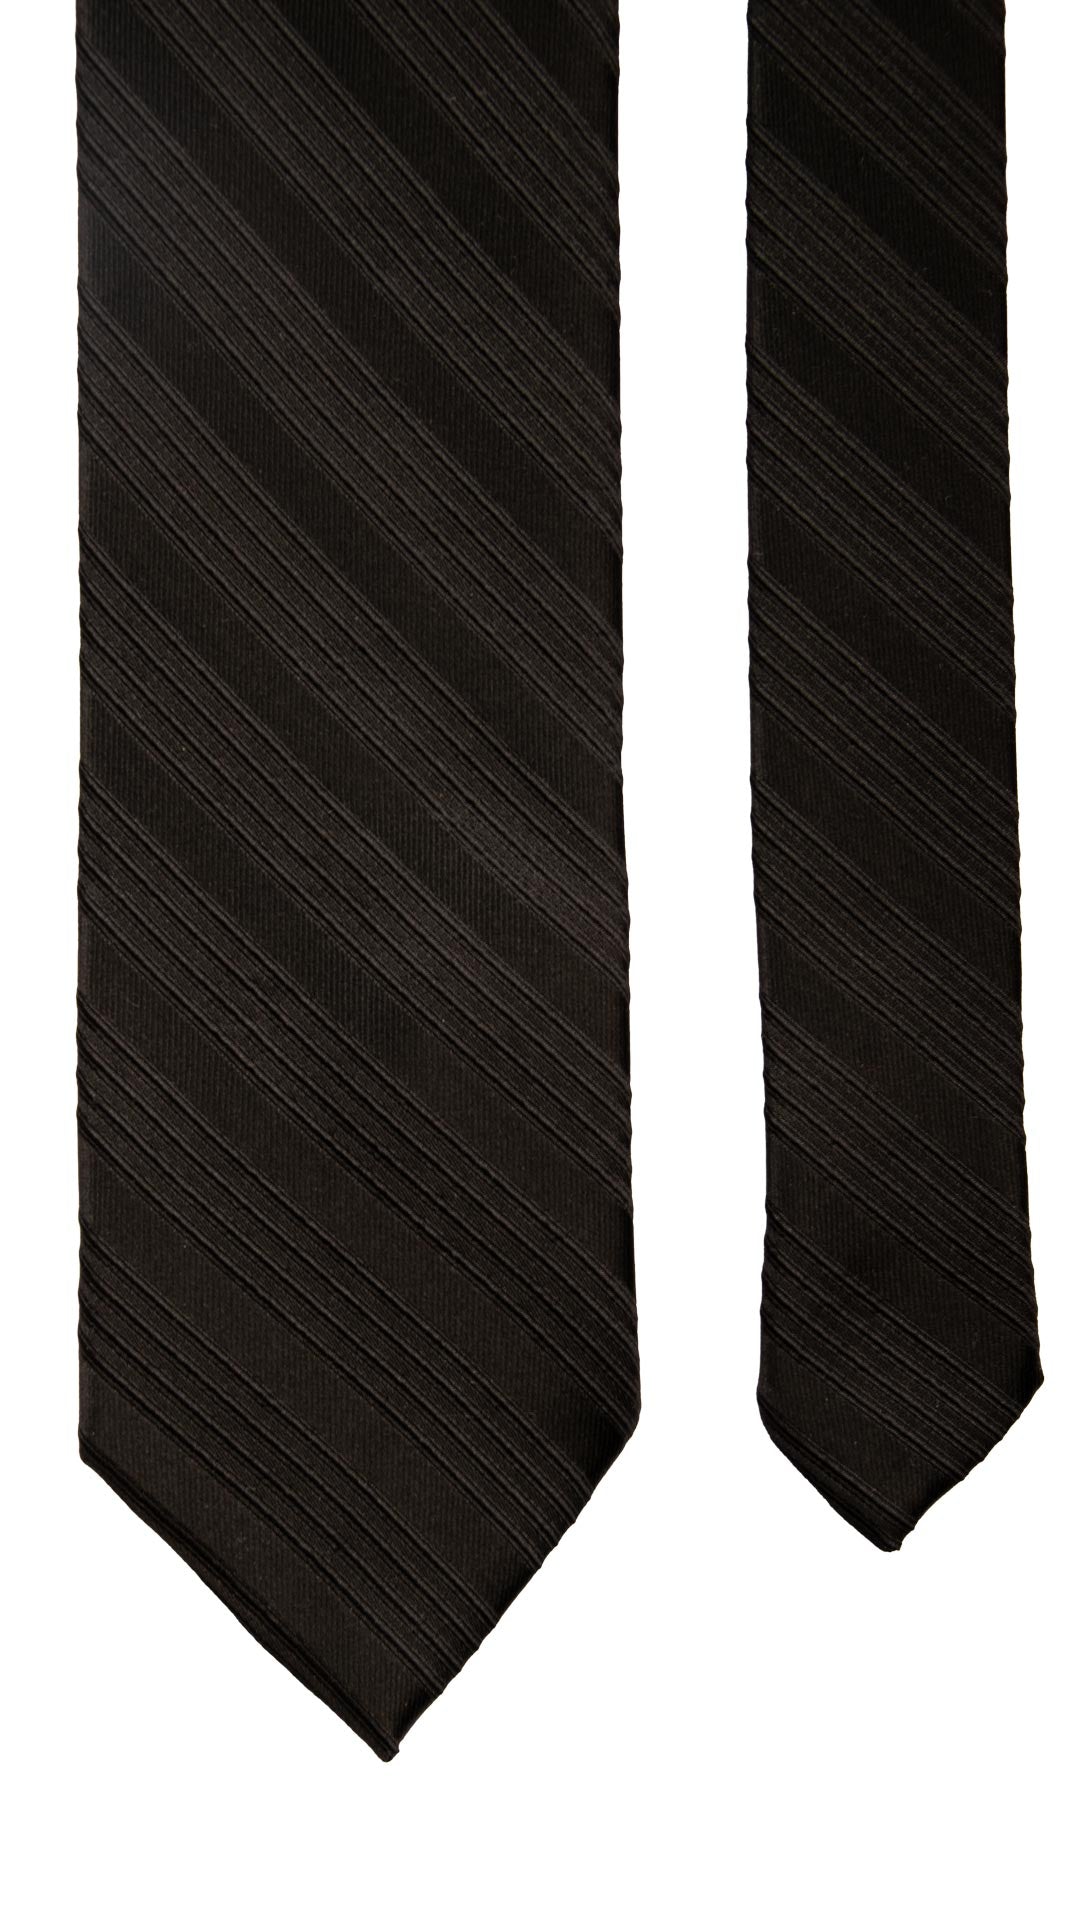 Cravatta Regimental da Cerimonia di Seta Nera con Righe Tono su Tono CY6779 Pala